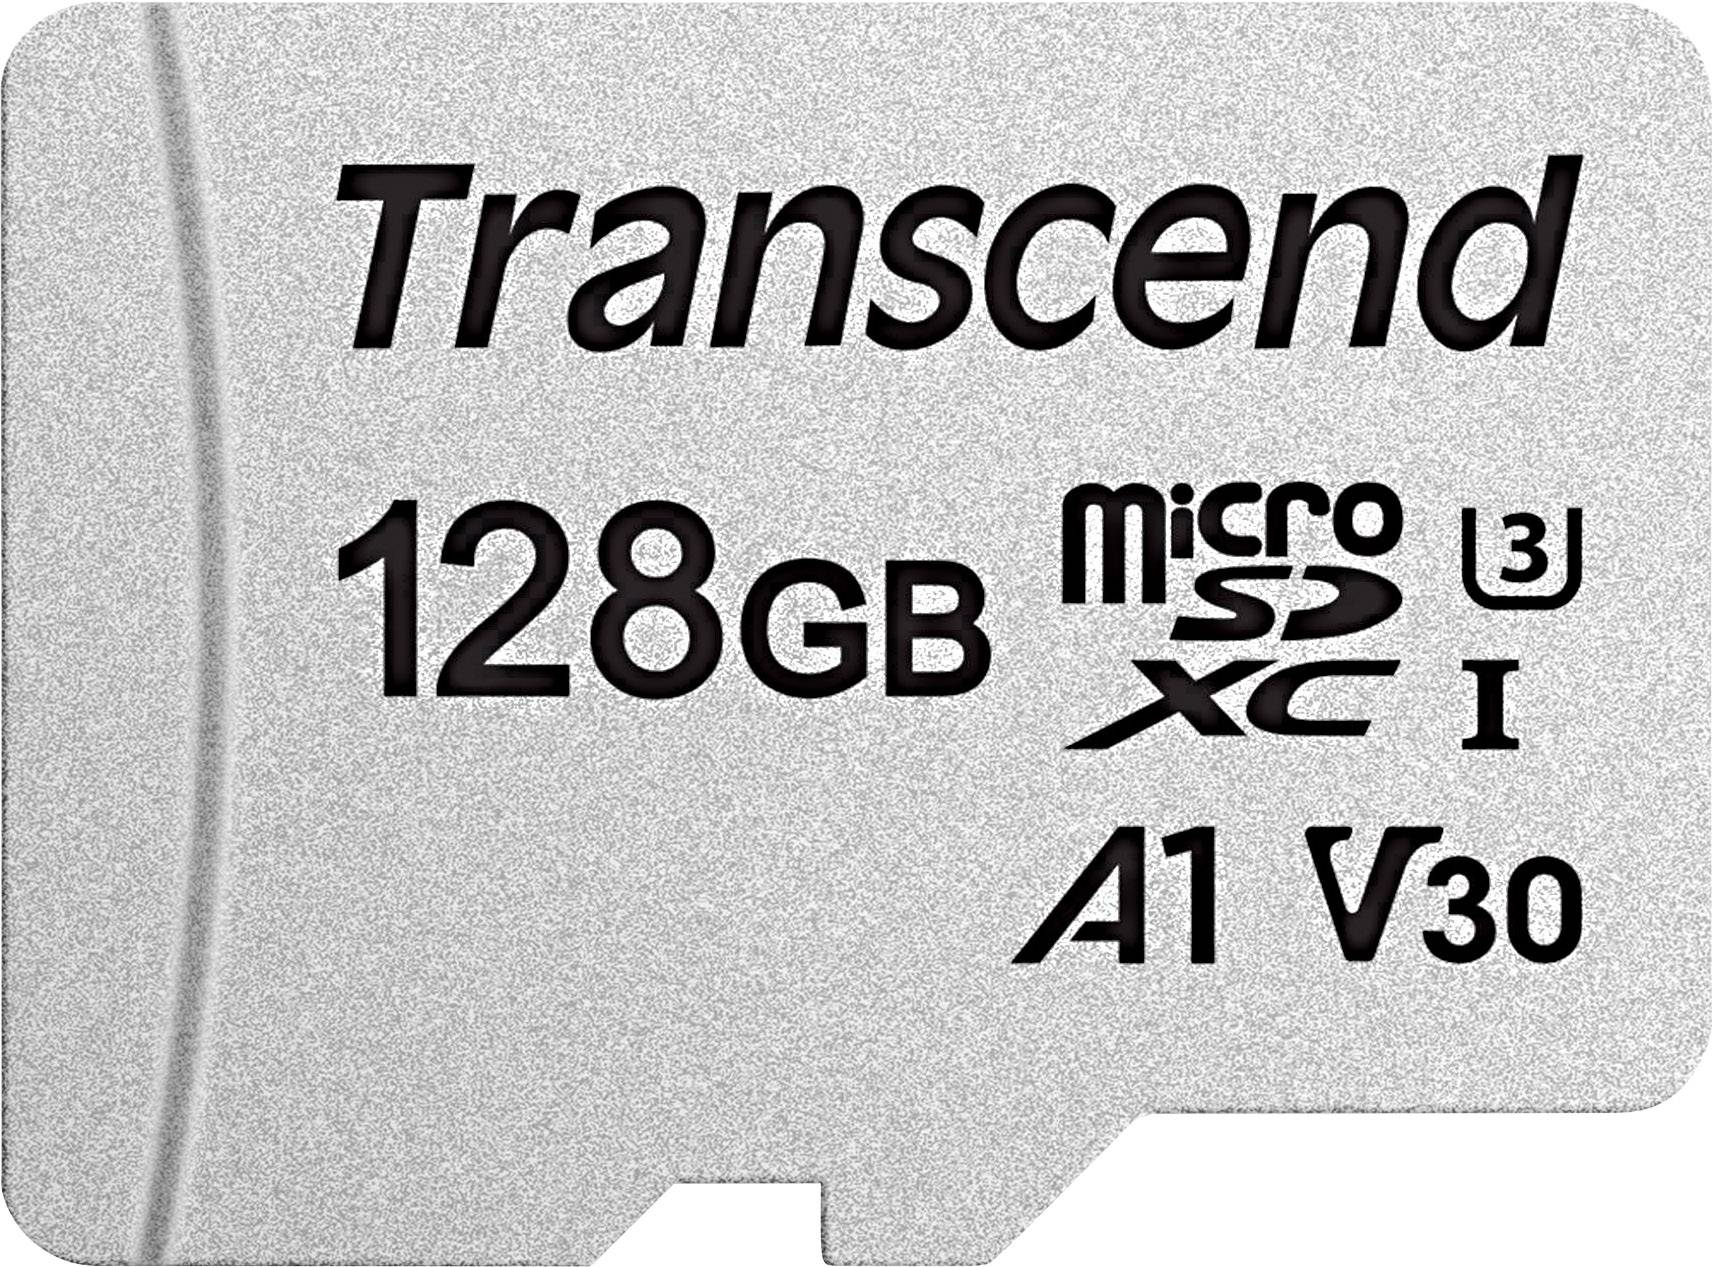 Памяти 64 128 гб. Ts32gusd300s-a карта памяти Transcend. Transcend MICROSDXC 300s 128gb. Карта памяти MICROSD 32gb Transcend class10. Карта памяти Transcend MICROSDHC 300s class 10 UHS-I u1 32gb + SD Adapter.